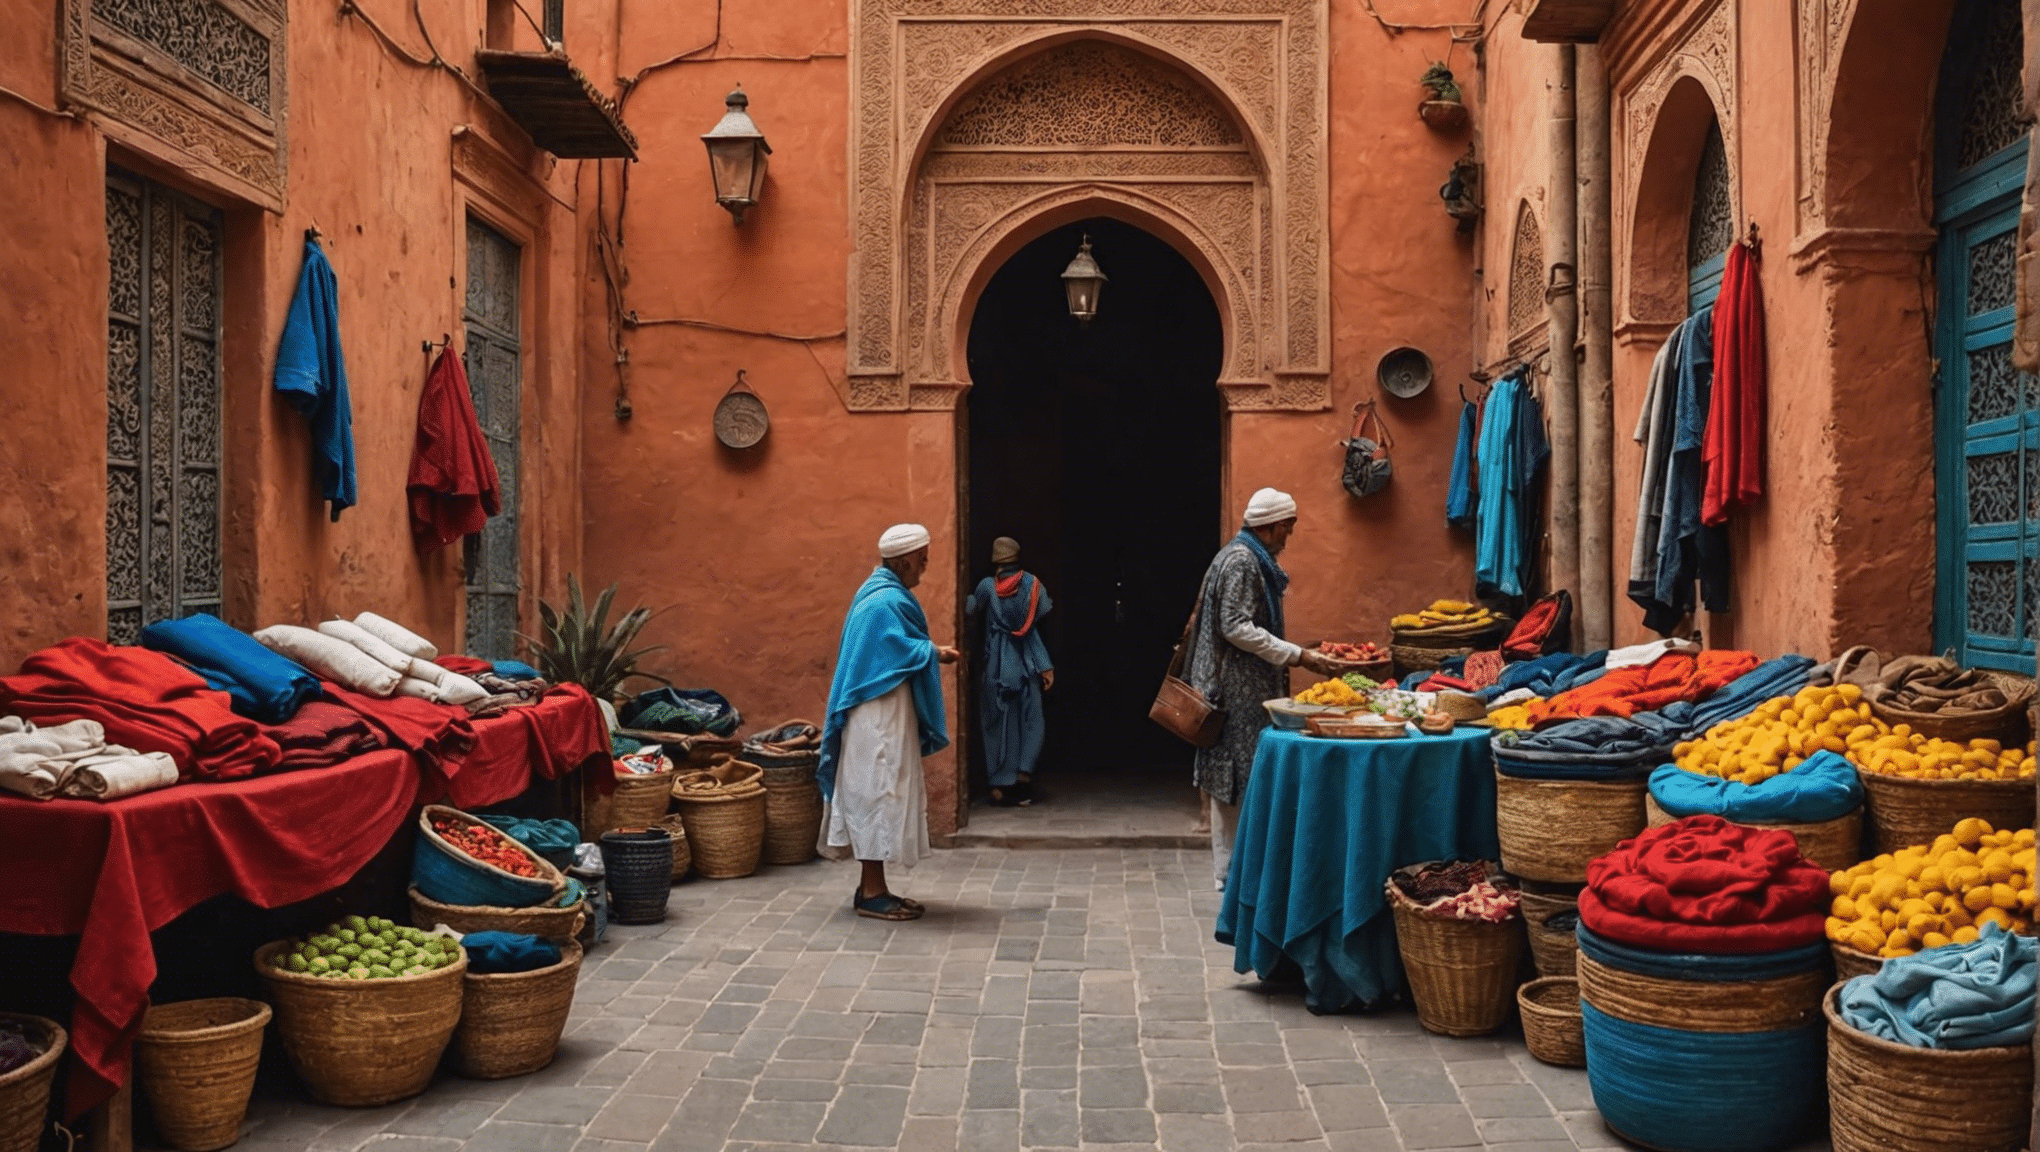 Descubra los artículos esenciales que debe empacar para su inolvidable aventura en Marrakech en abril con nuestra guía completa.